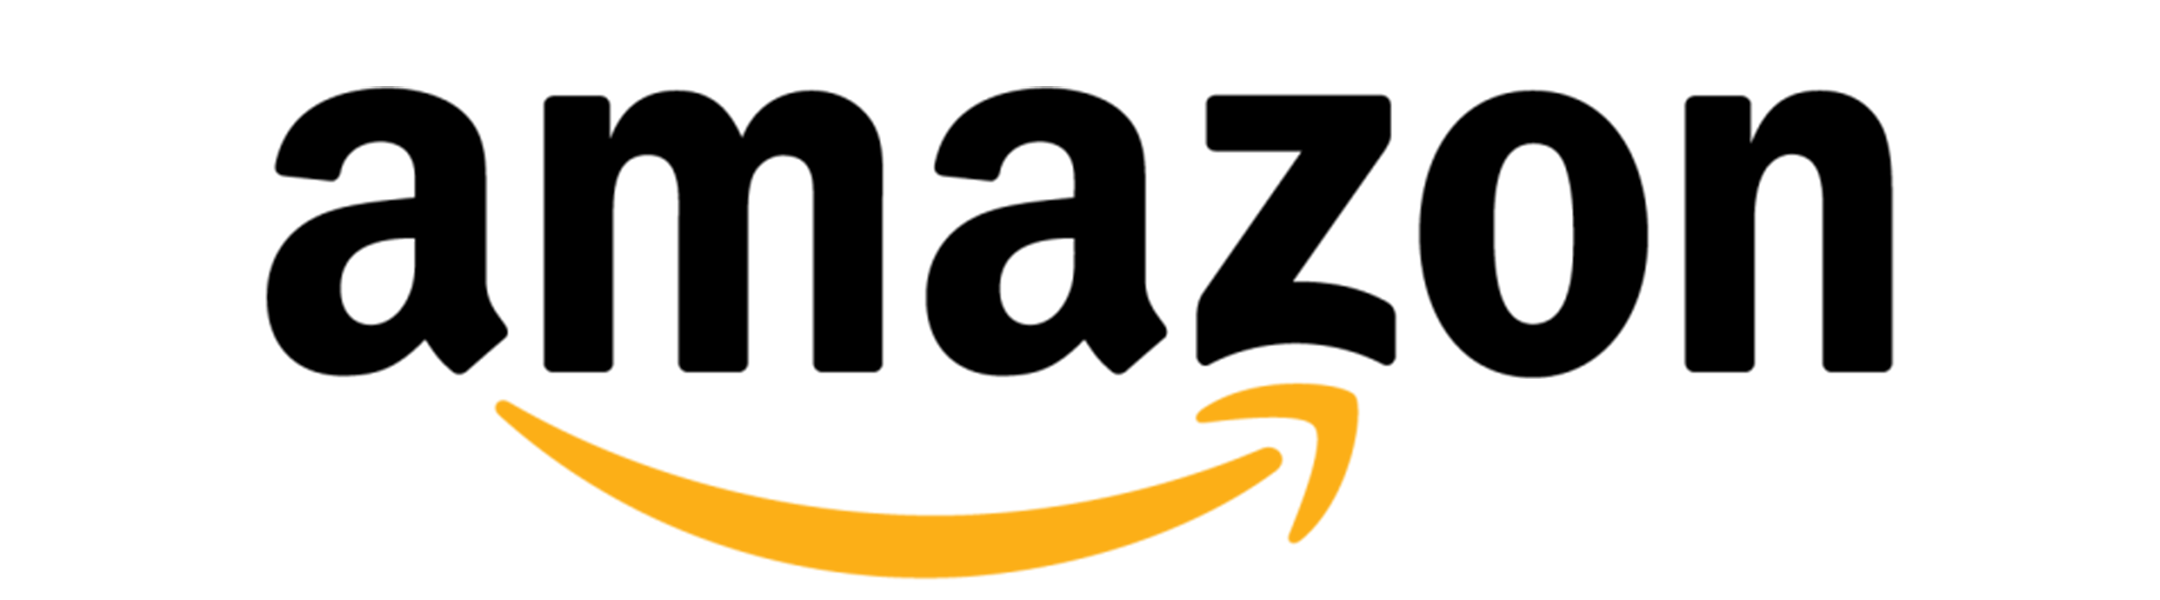 Amazon Pro